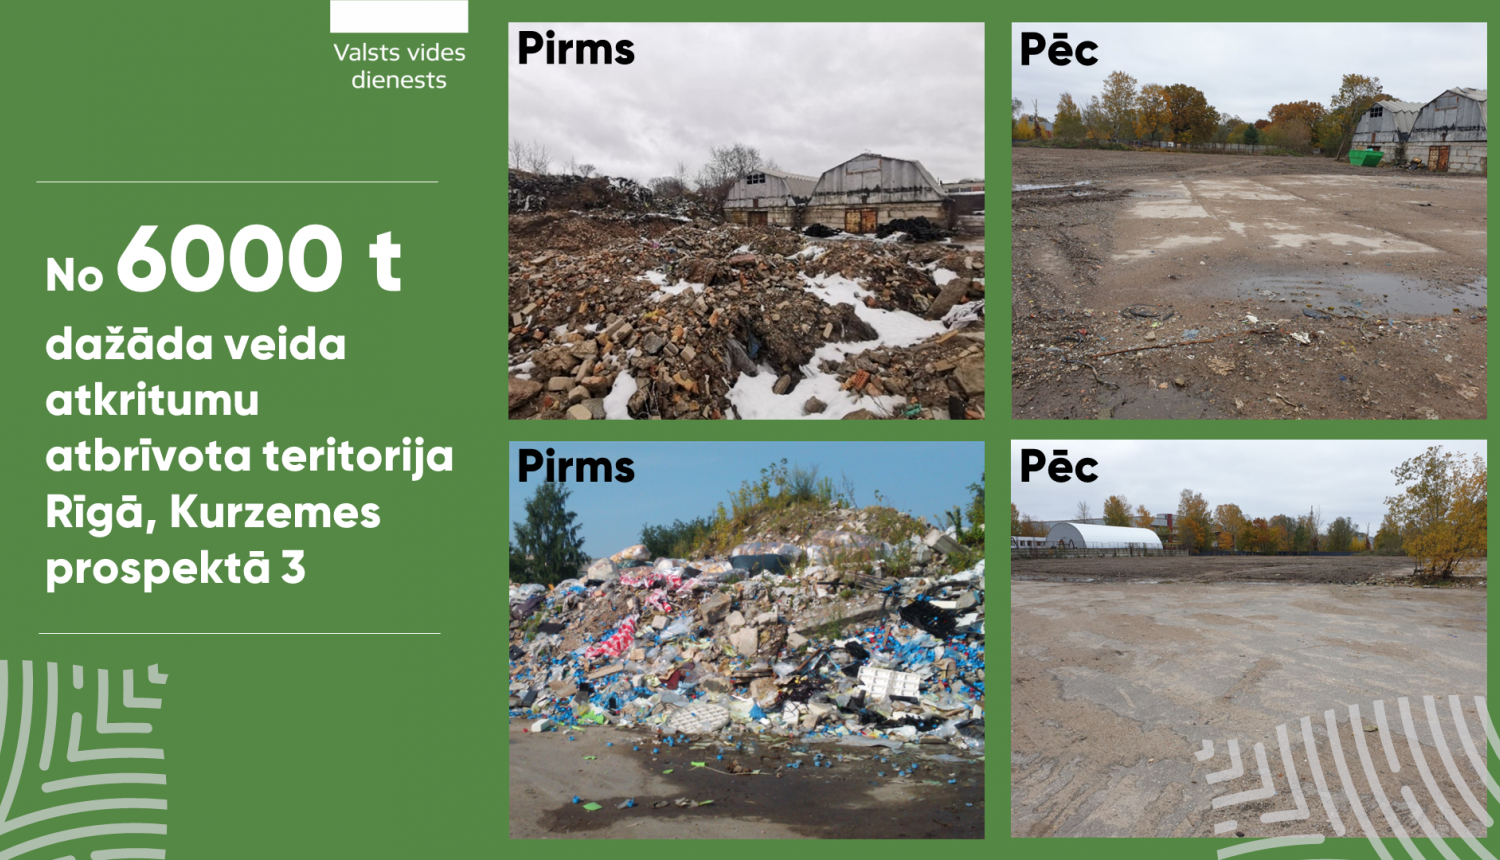 VVD informē - No 6000 tonnām dažāda veida atkritumu atbrīvota teritorija Rīgā, Kurzemes prospektā 3